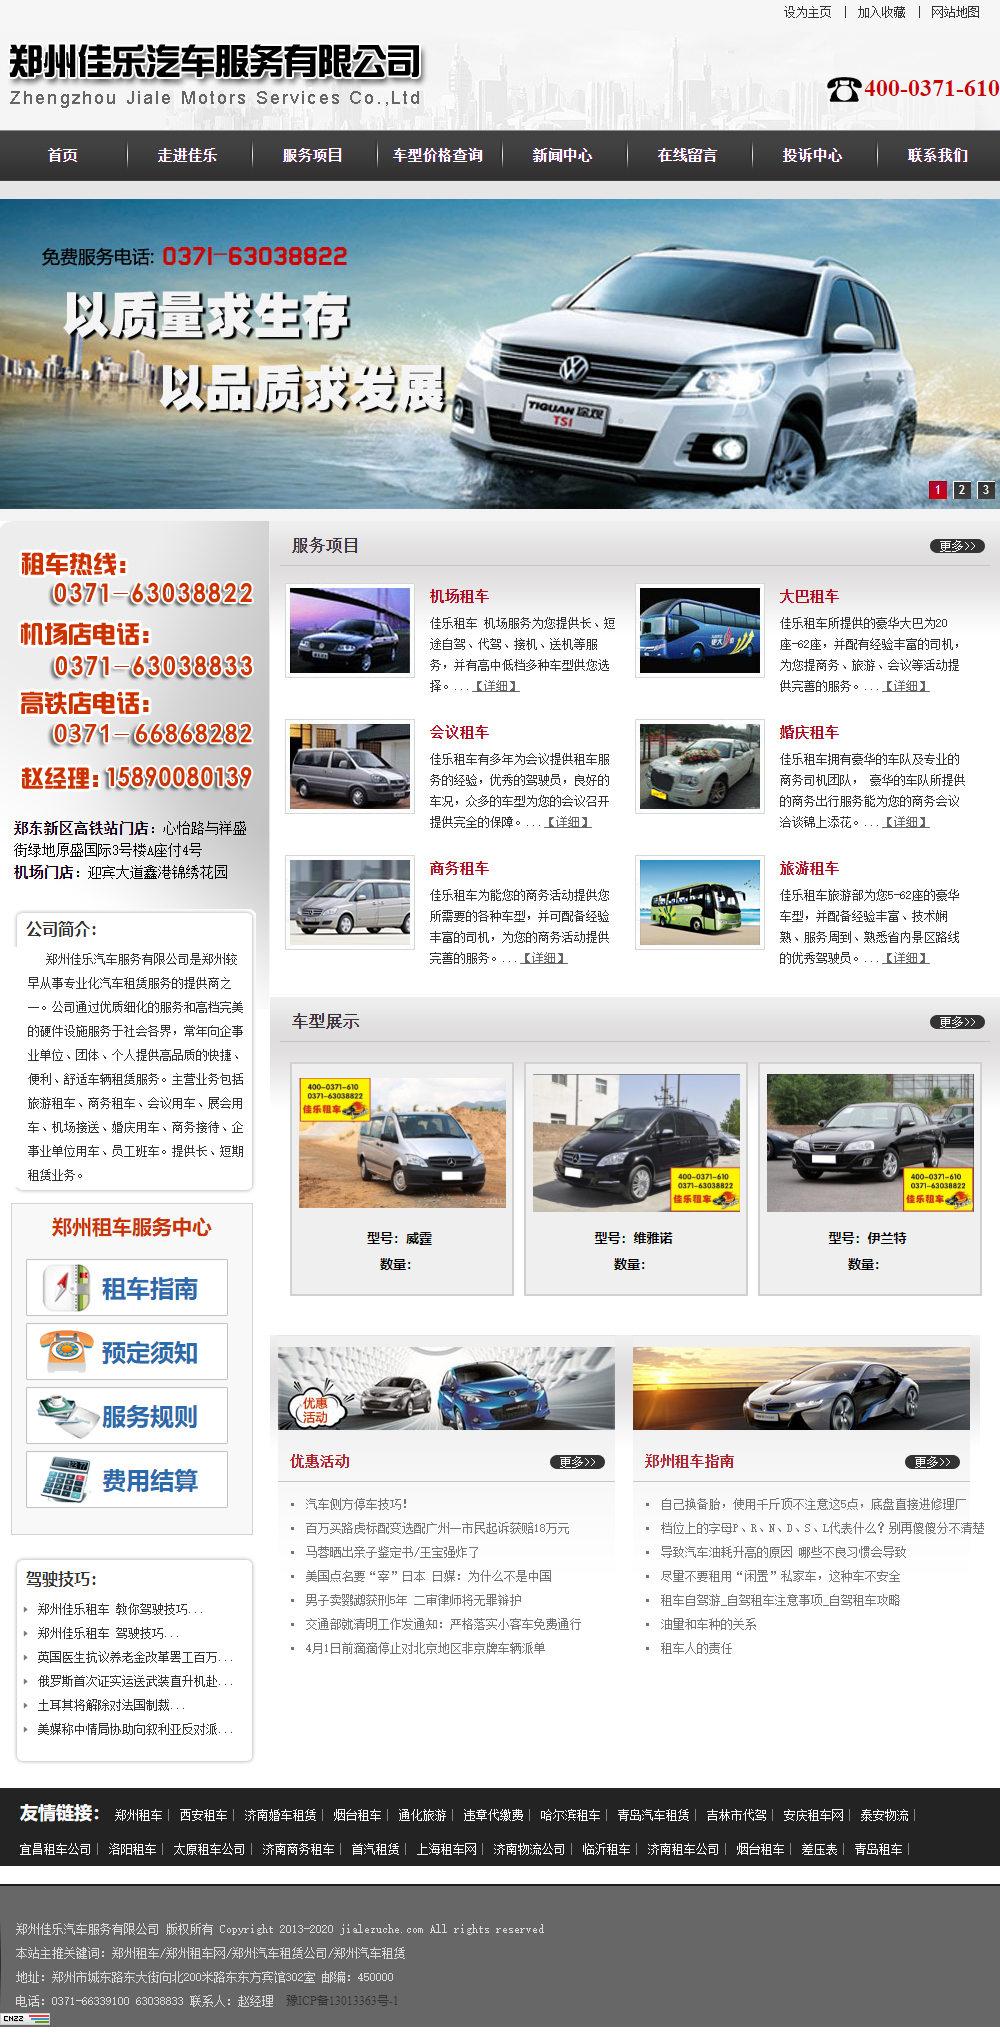 郑州佳乐汽车服务有限公司网站案例